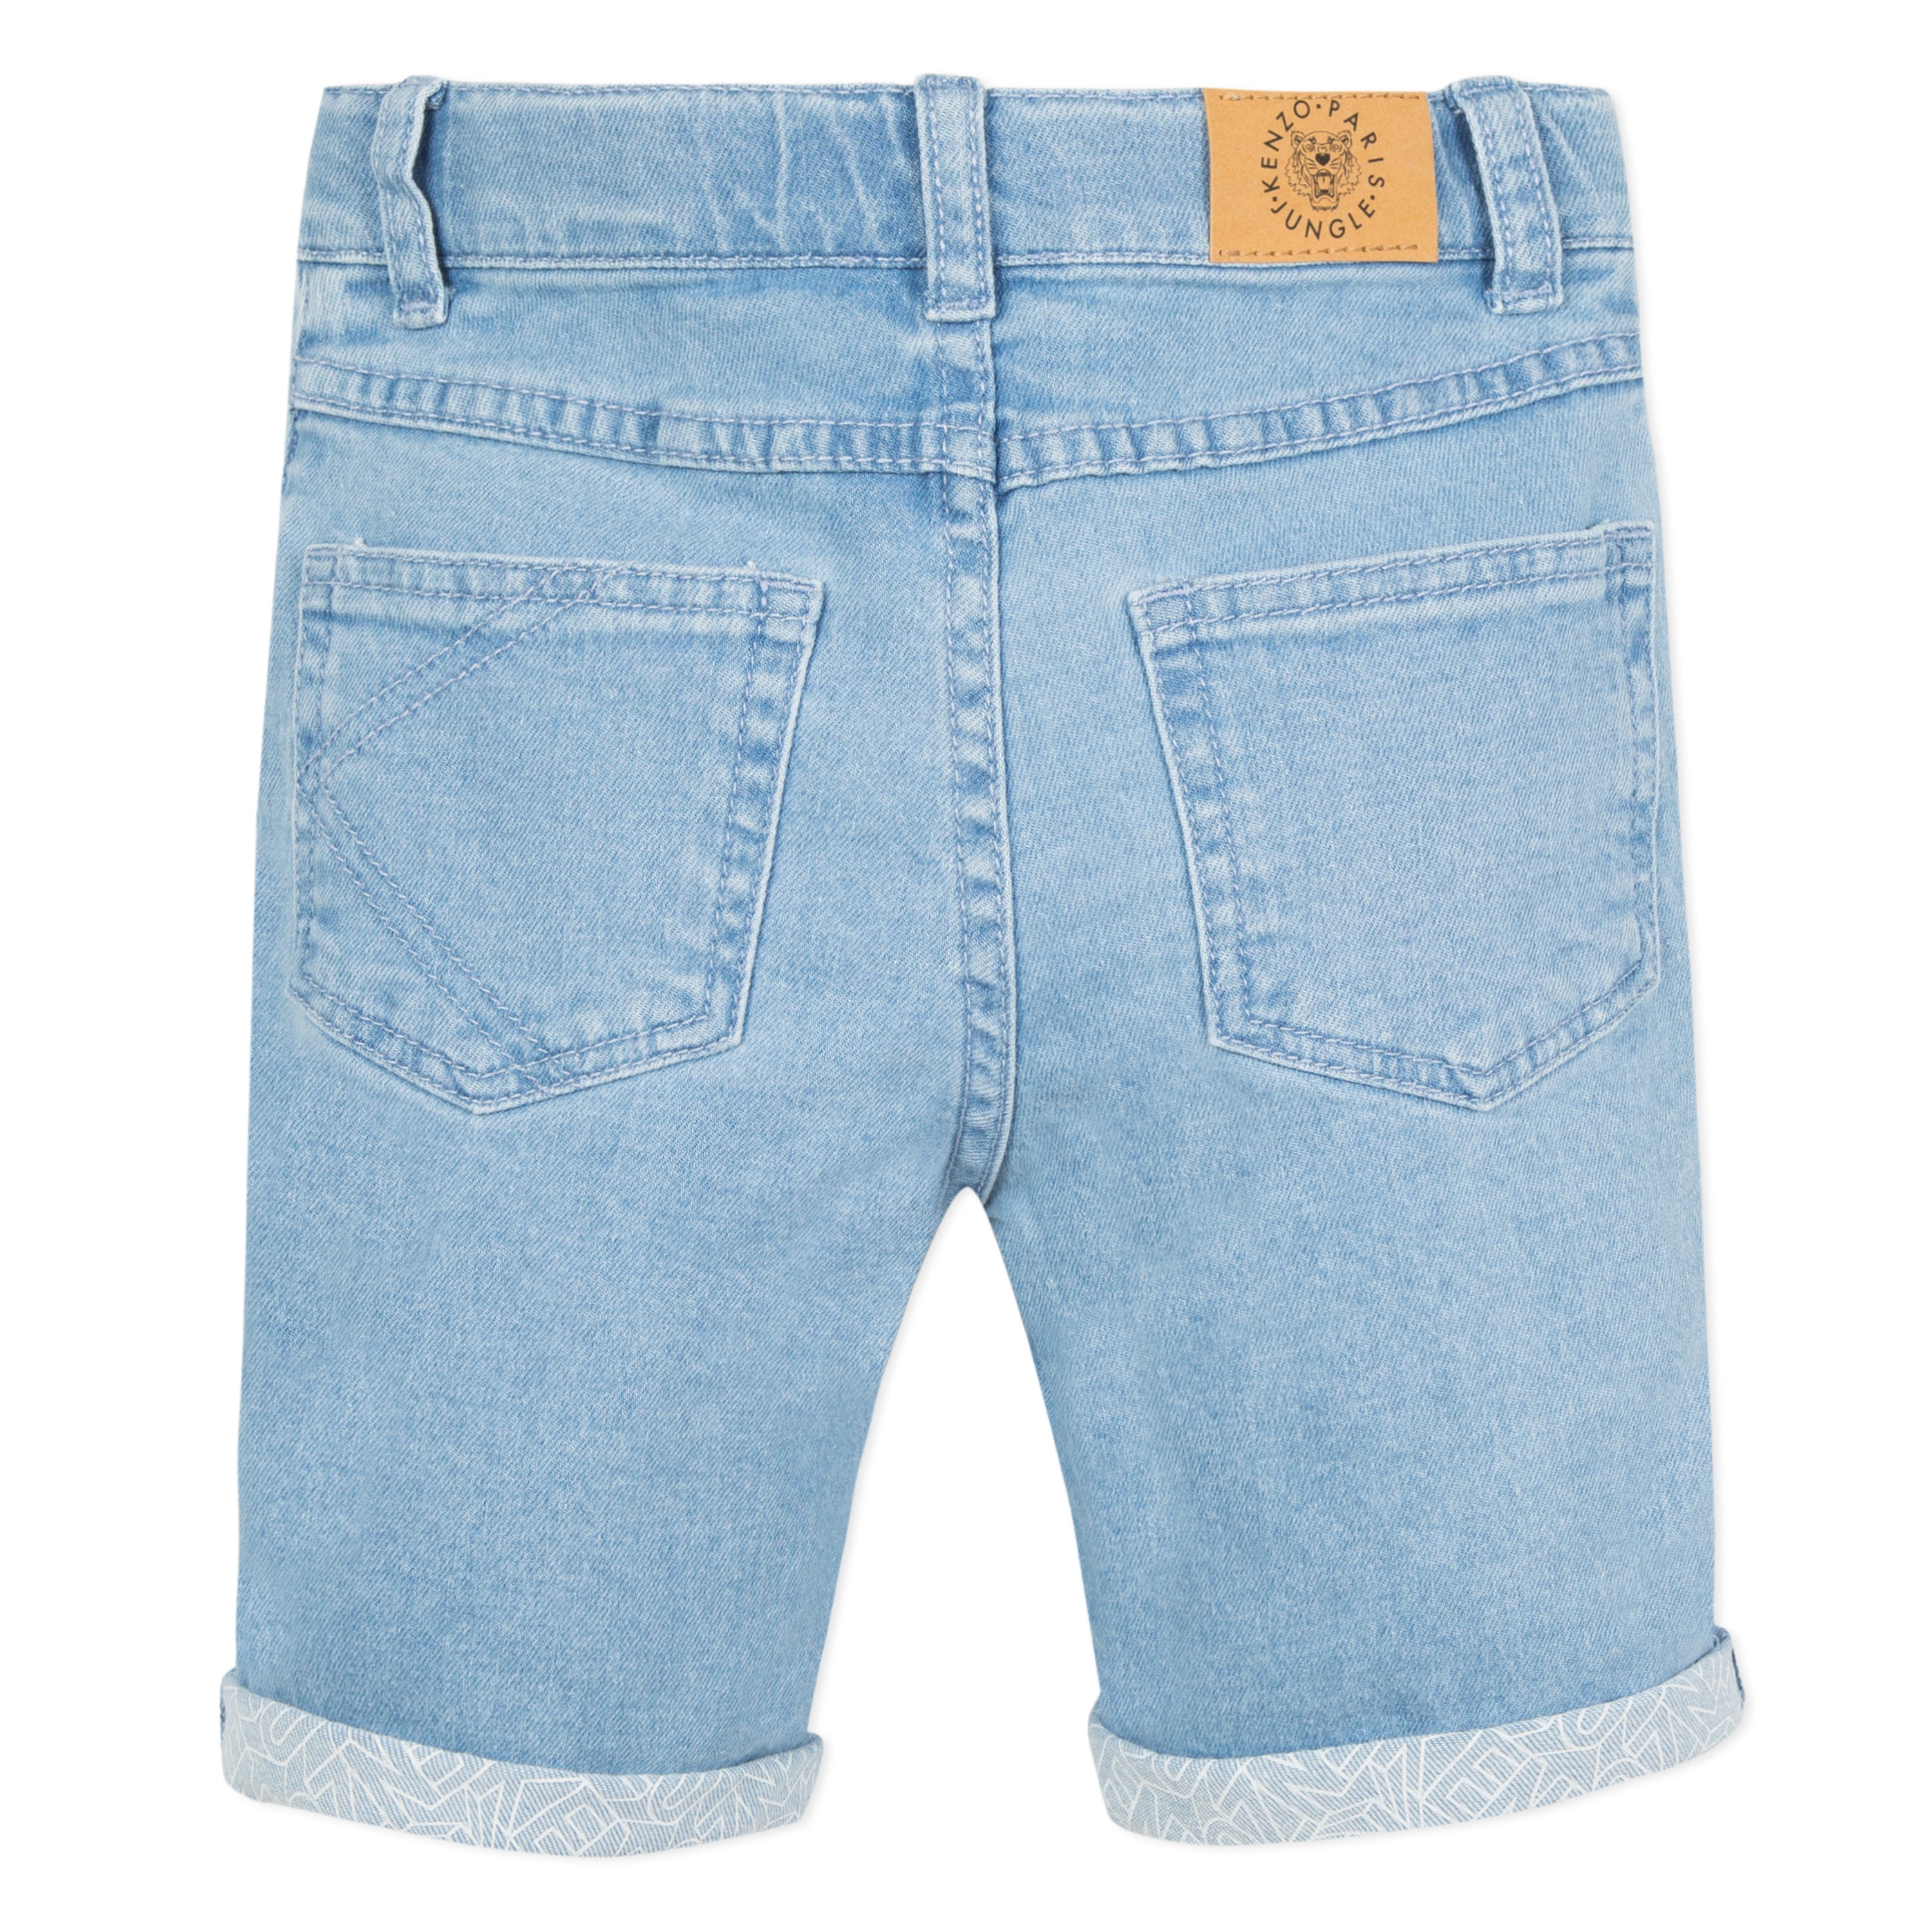 Boys Indigo Cotton Shorts